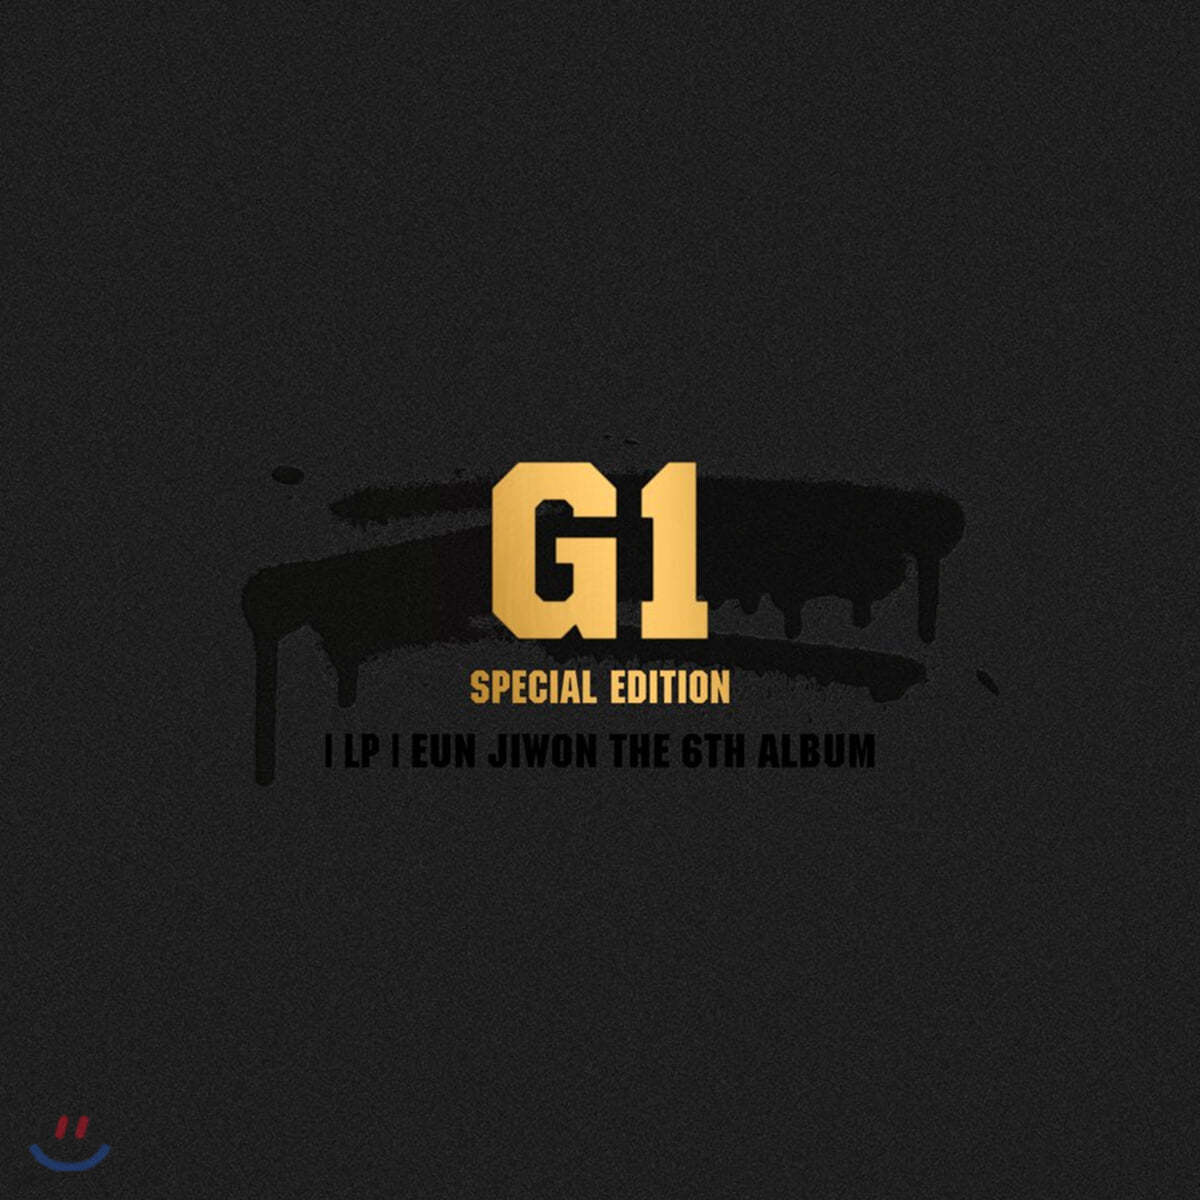 은지원 - EUN JIWON THE 6TH ALBUM : G1 [LP]